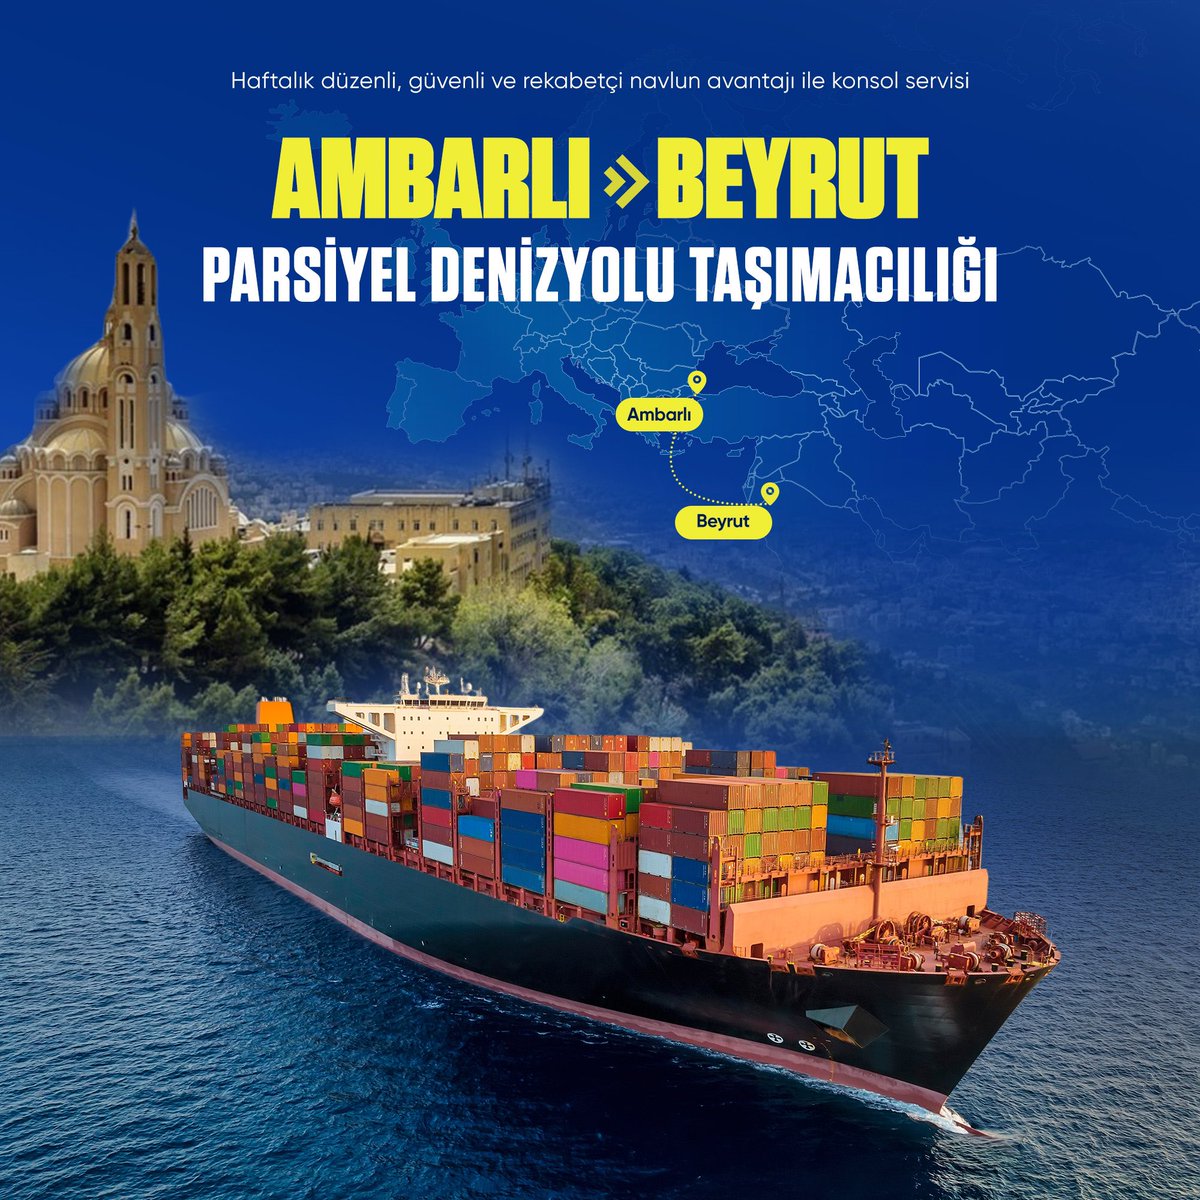 Parsiyel denizyolu konsol servisinde teknolojik, hızlı ve esnek çözümler ile Ambarlı - Beyrut arası ihracatınızda rekabetçi navlun avantajının farkını yaşayın.